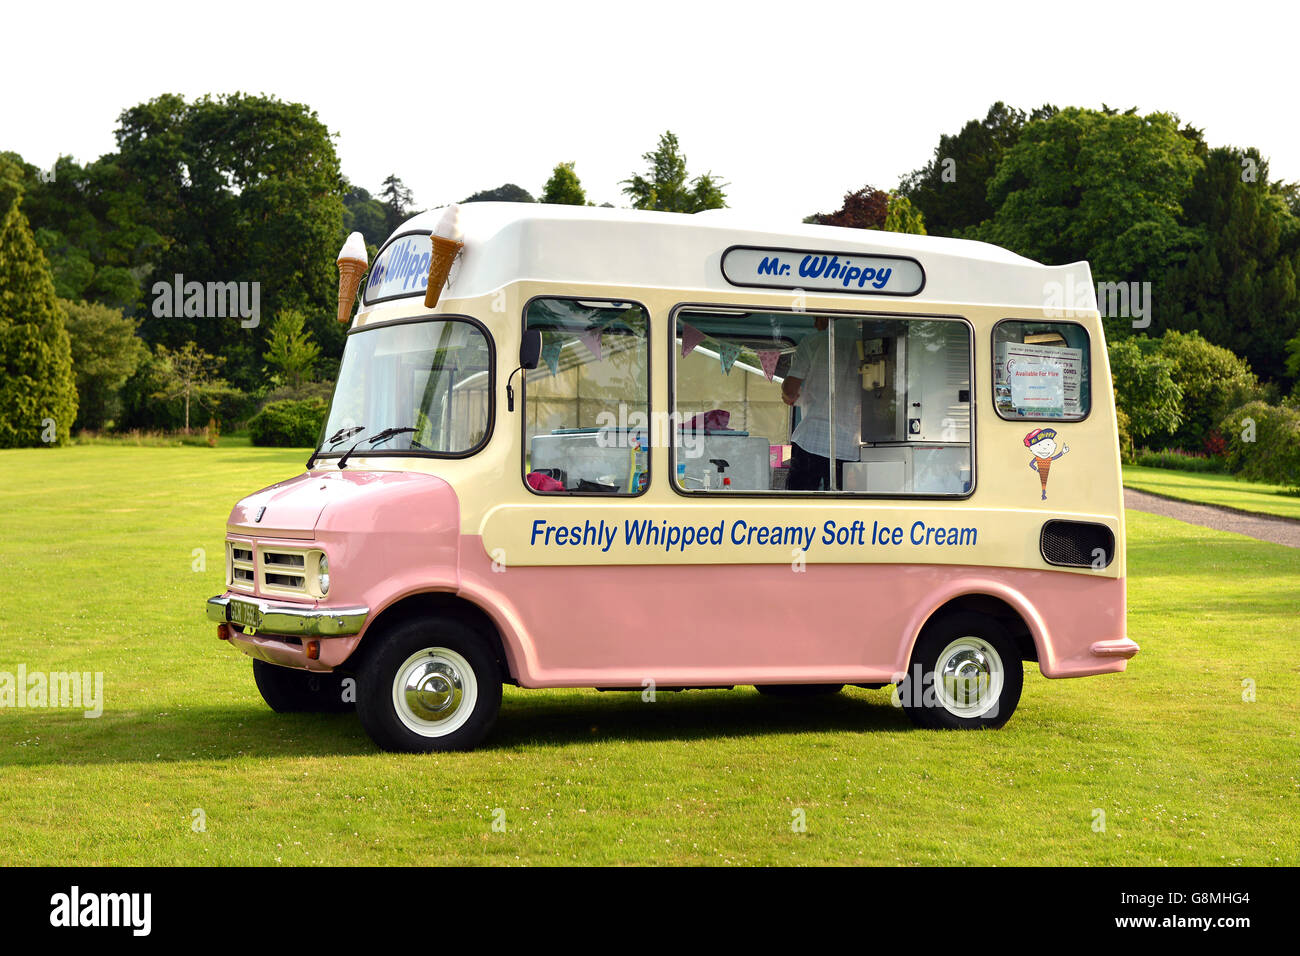 mr whippy ice cream vans for sale